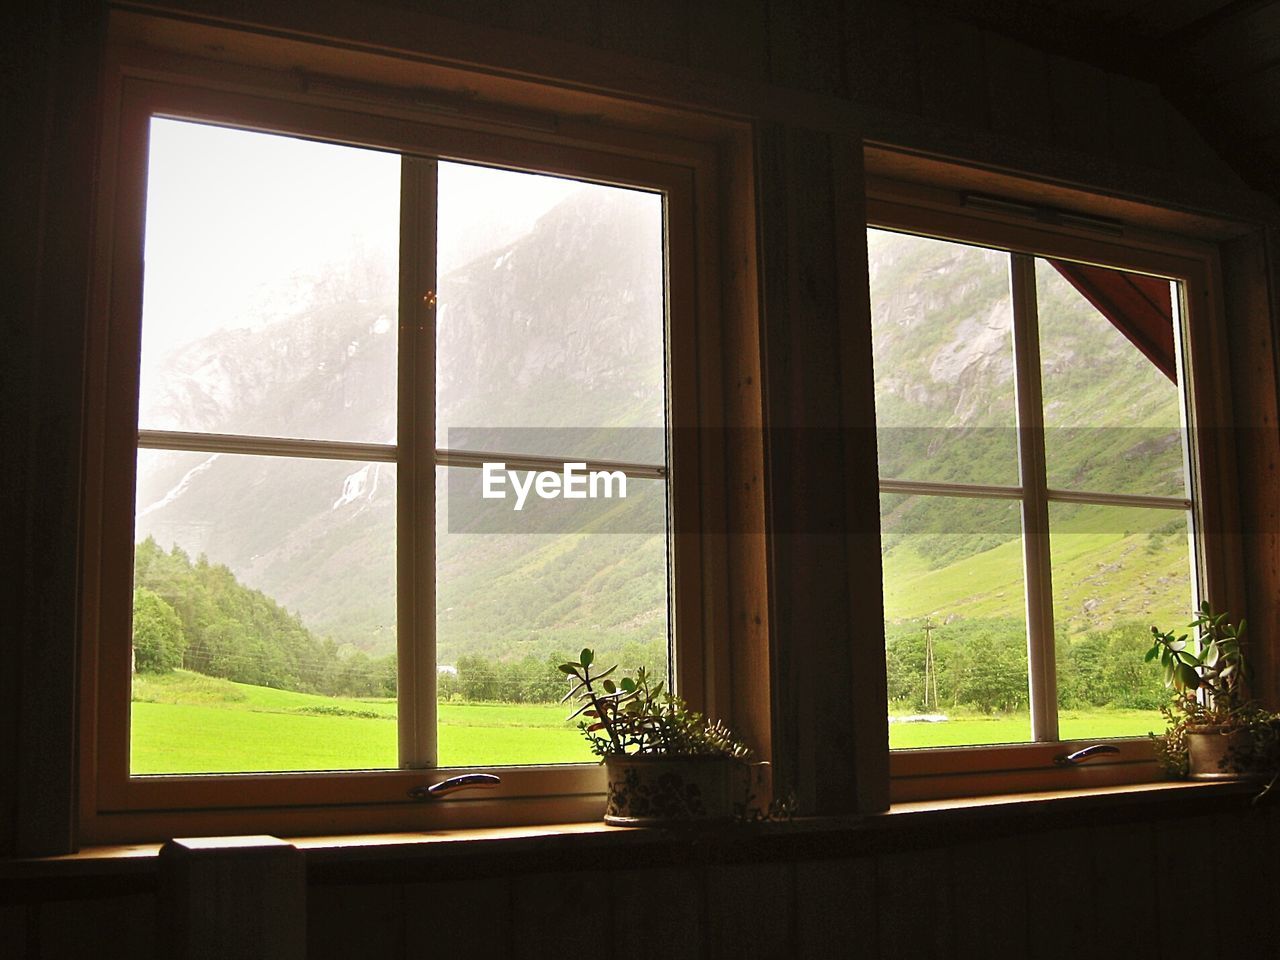 Green mountain landscape seen from house window